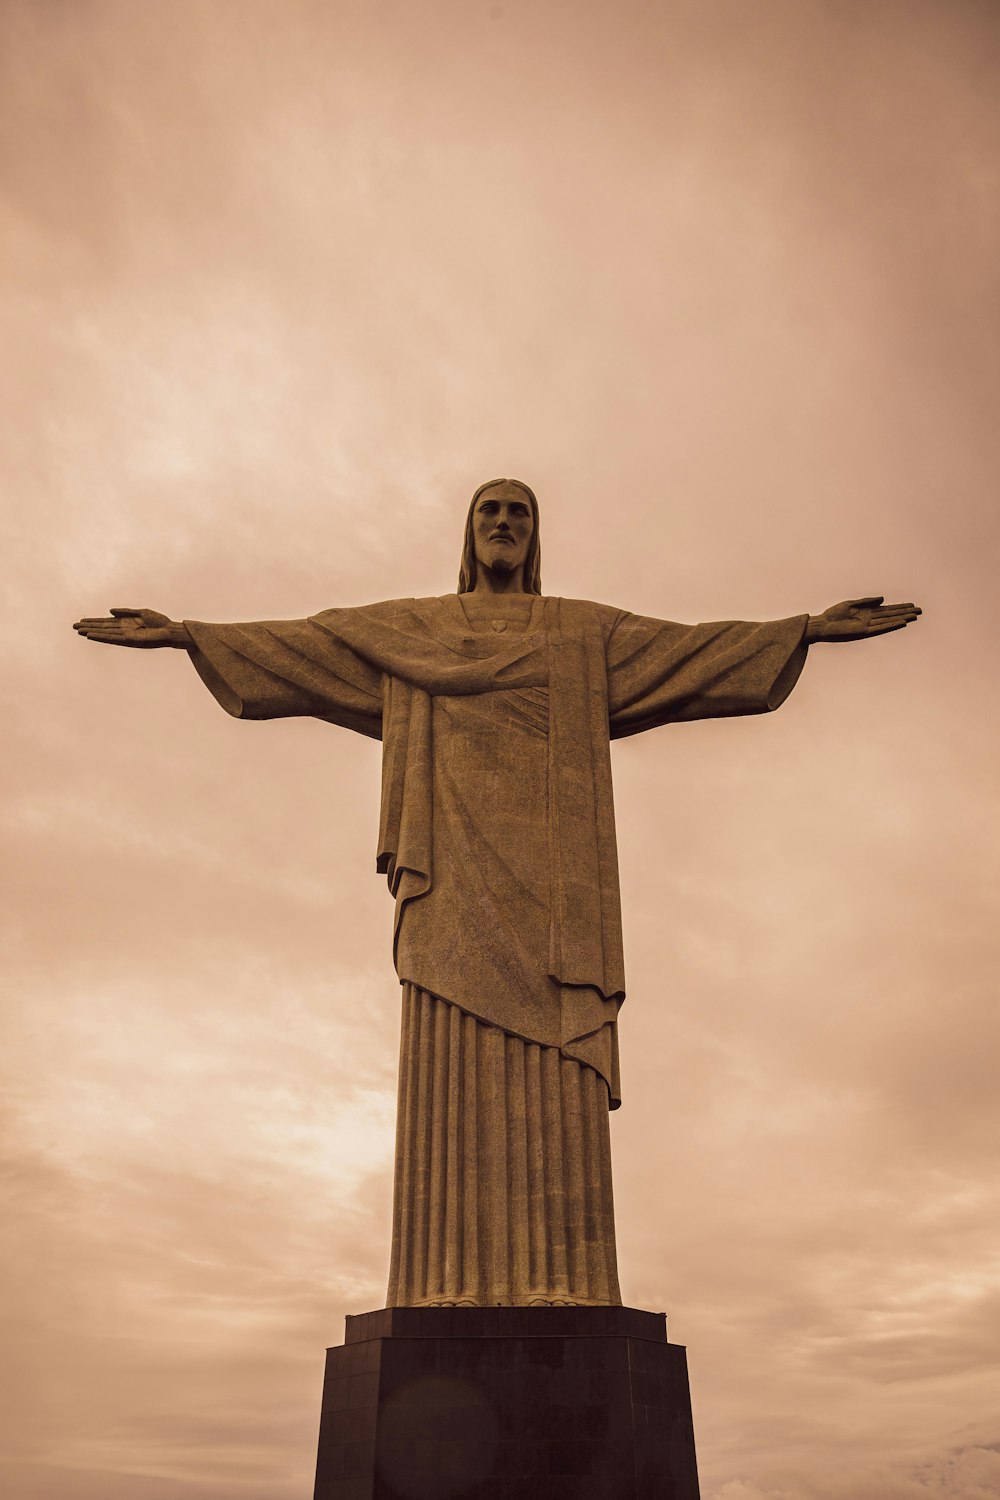 イエス・キリスト像のローアングル写真の写真 – Unsplashの無料茶色写真